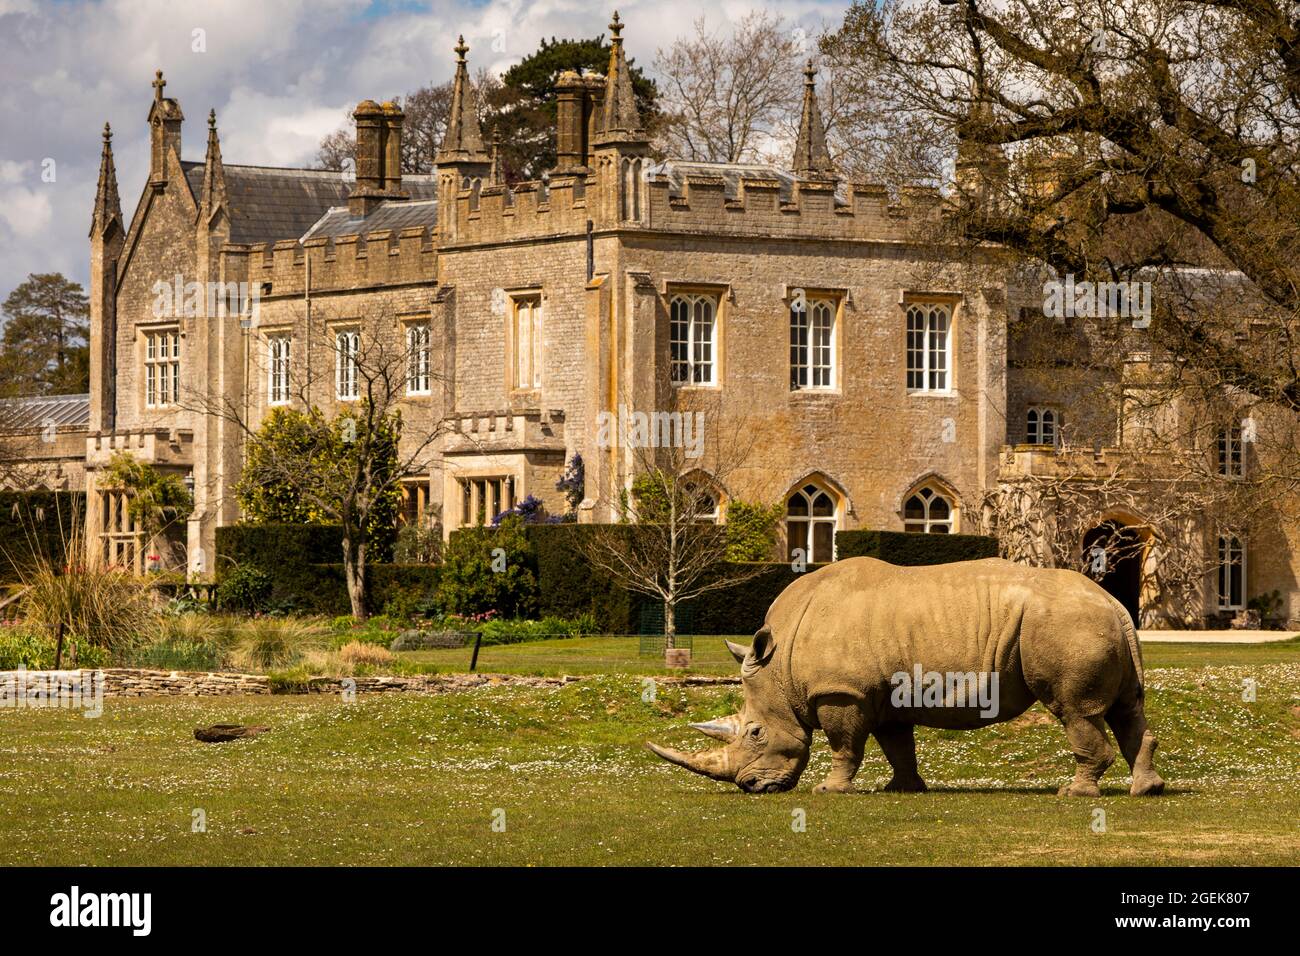 Royaume-Uni, Angleterre, Oxfordshire, Burford, Cotswold Wildlife Park, Rhino nourrissant par le renouveau gothique victorien Bradwell Grove Manor House Banque D'Images